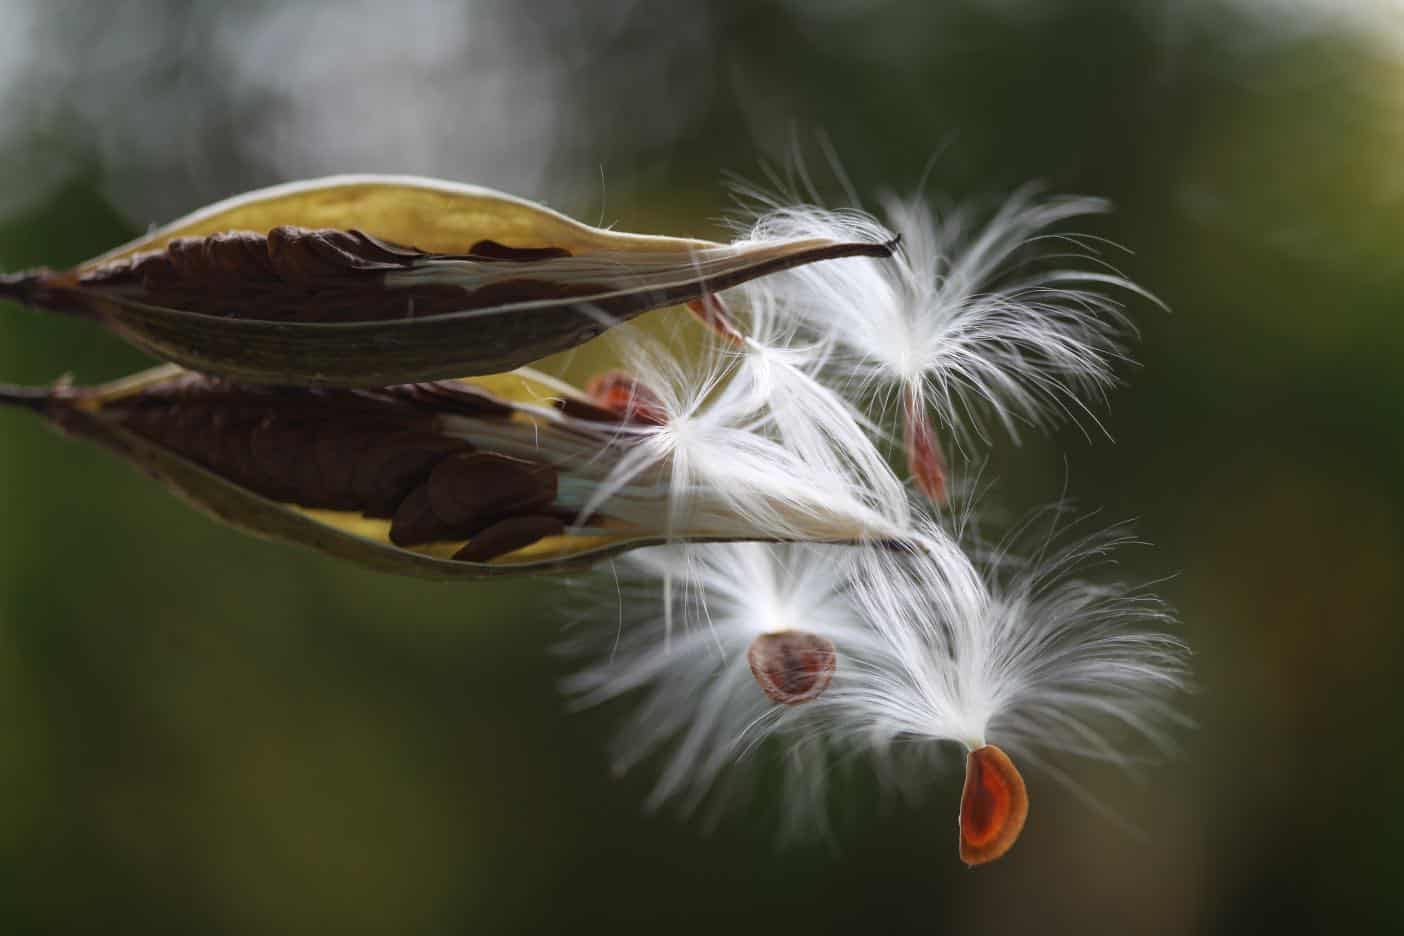 milkweed pods and seeds